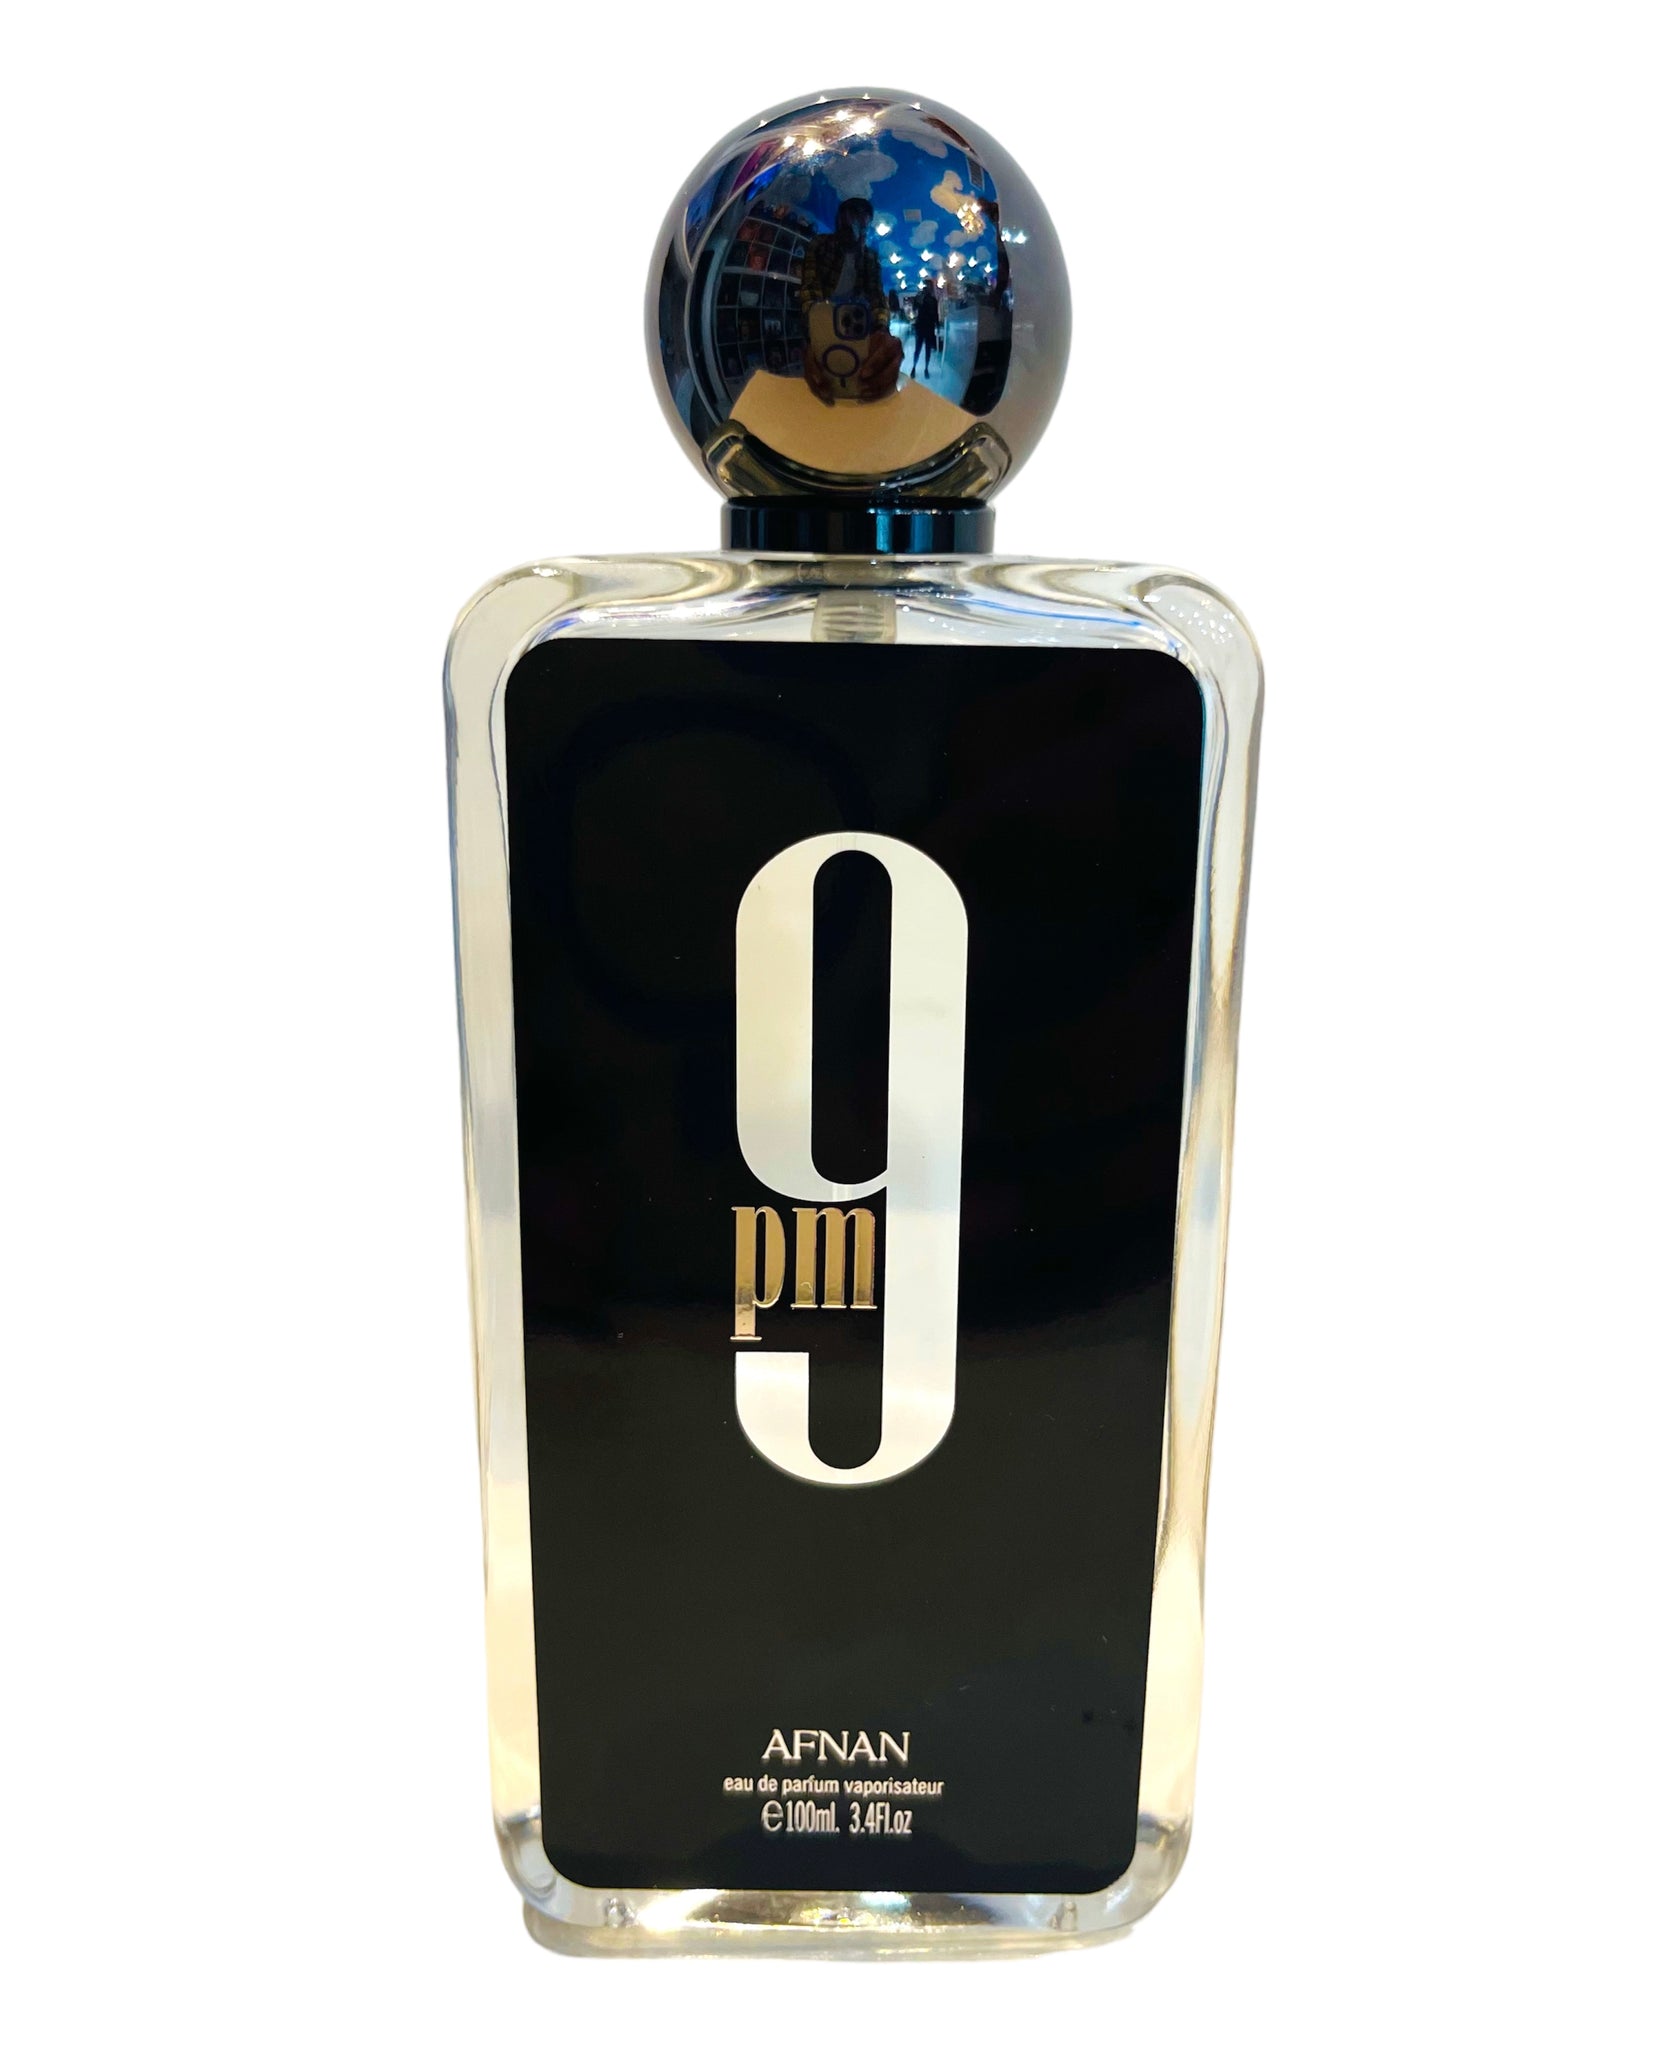 9pm Afnan cologne - a fragrance for men 2020